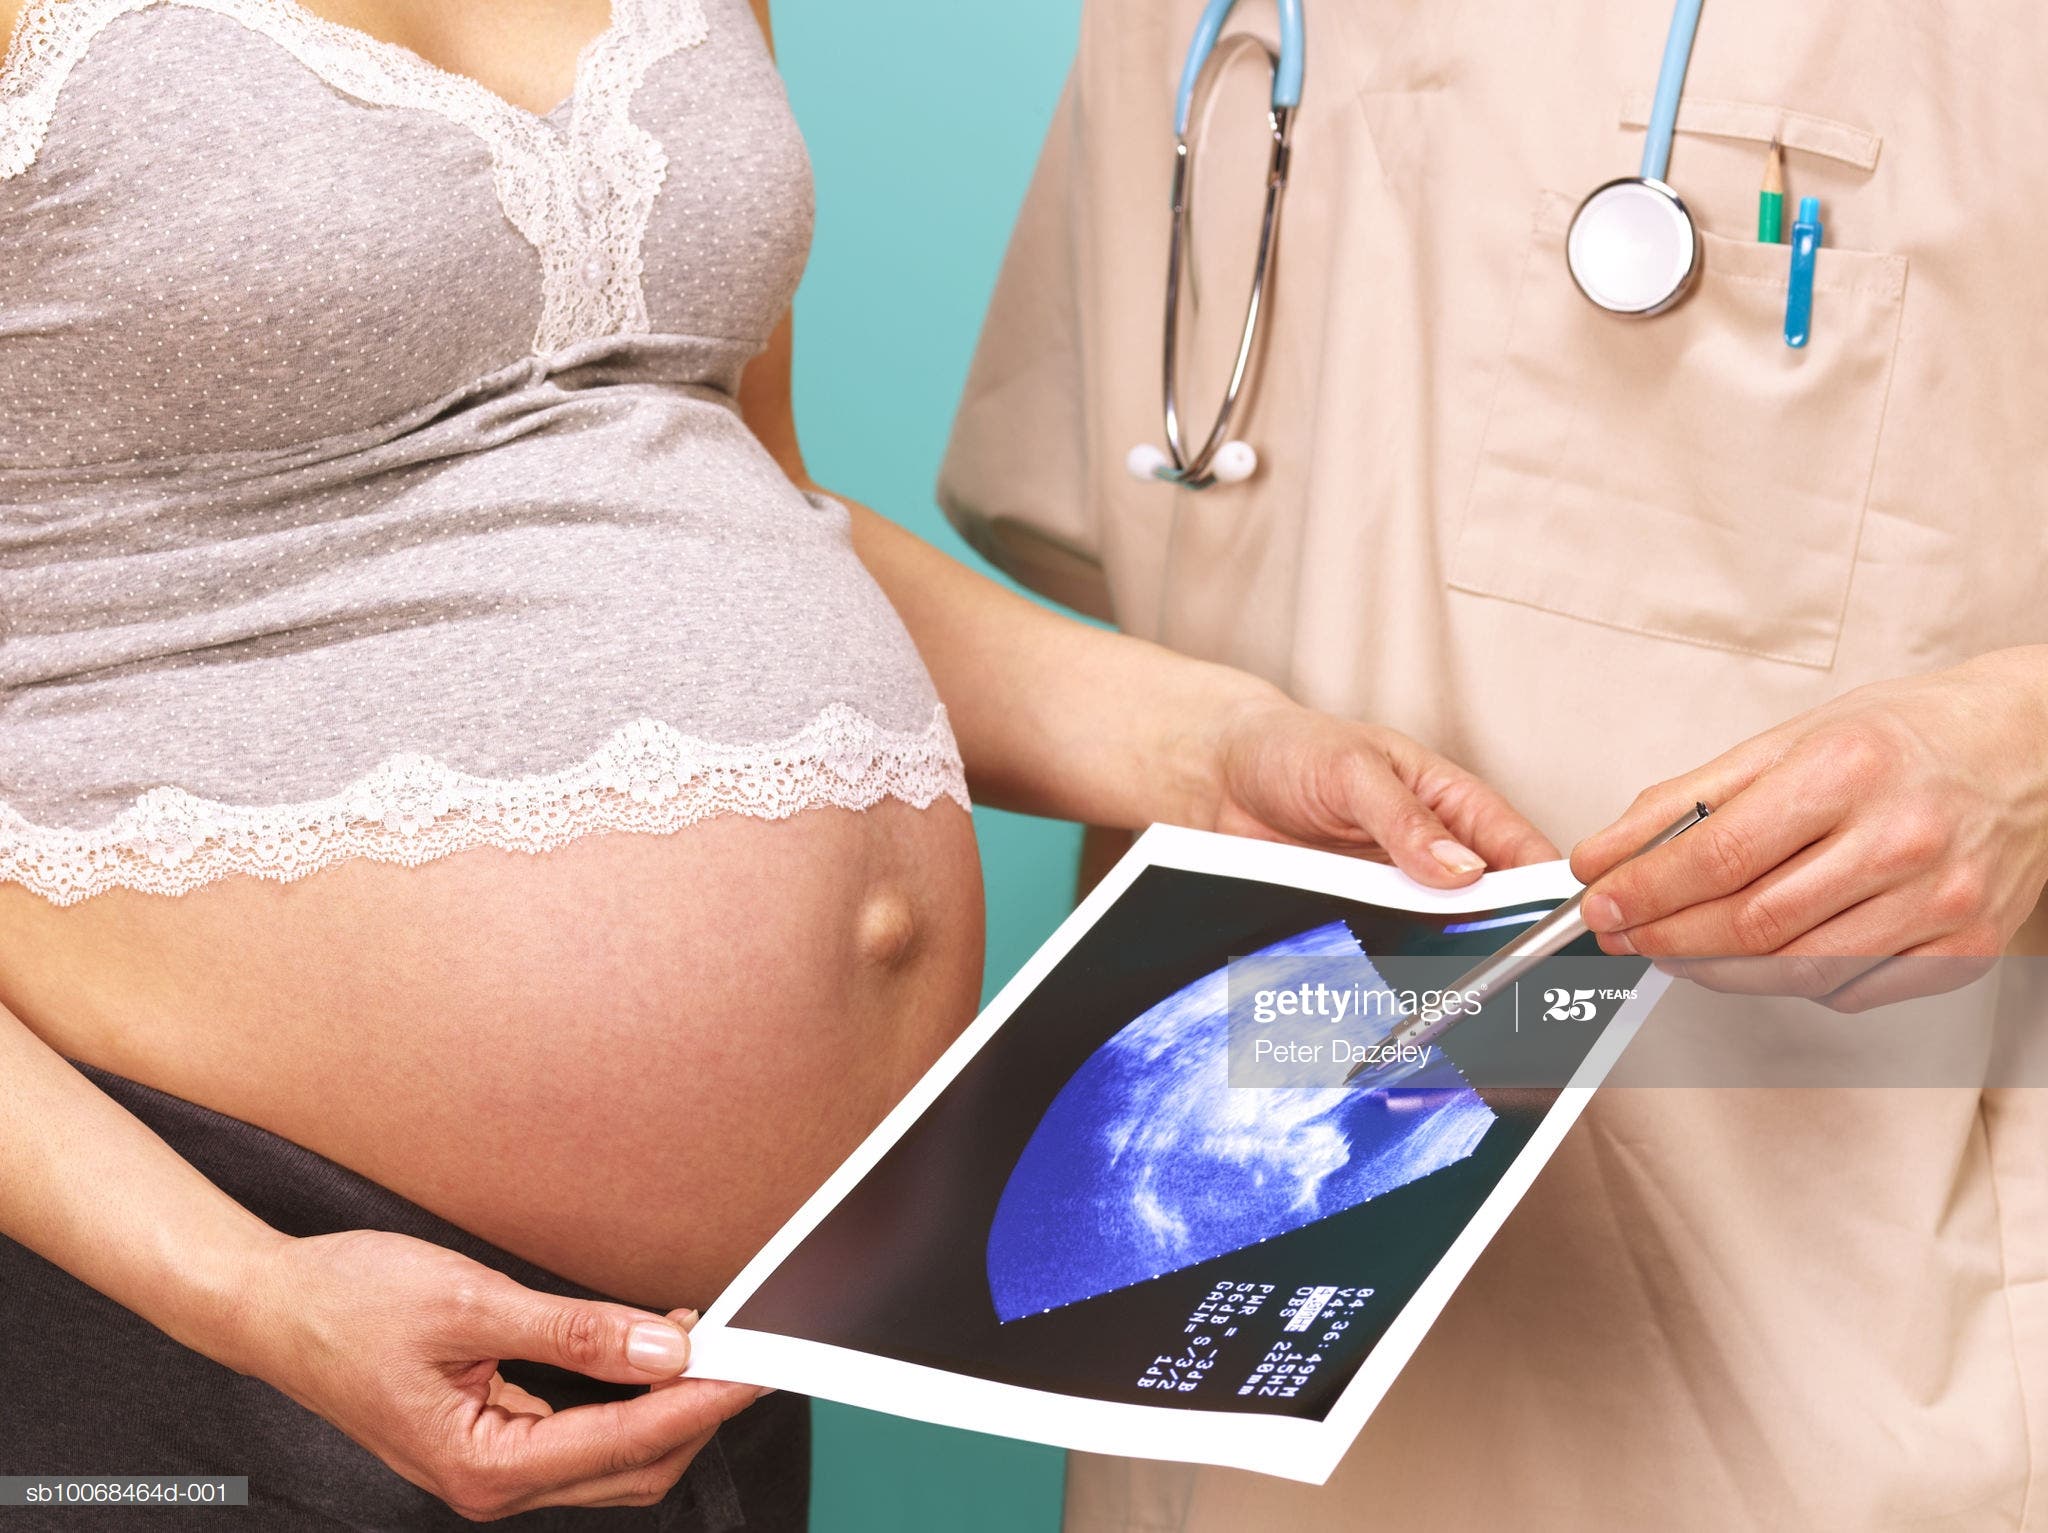 Menos consultas prenatales, una posible causa en aumento muertes maternas